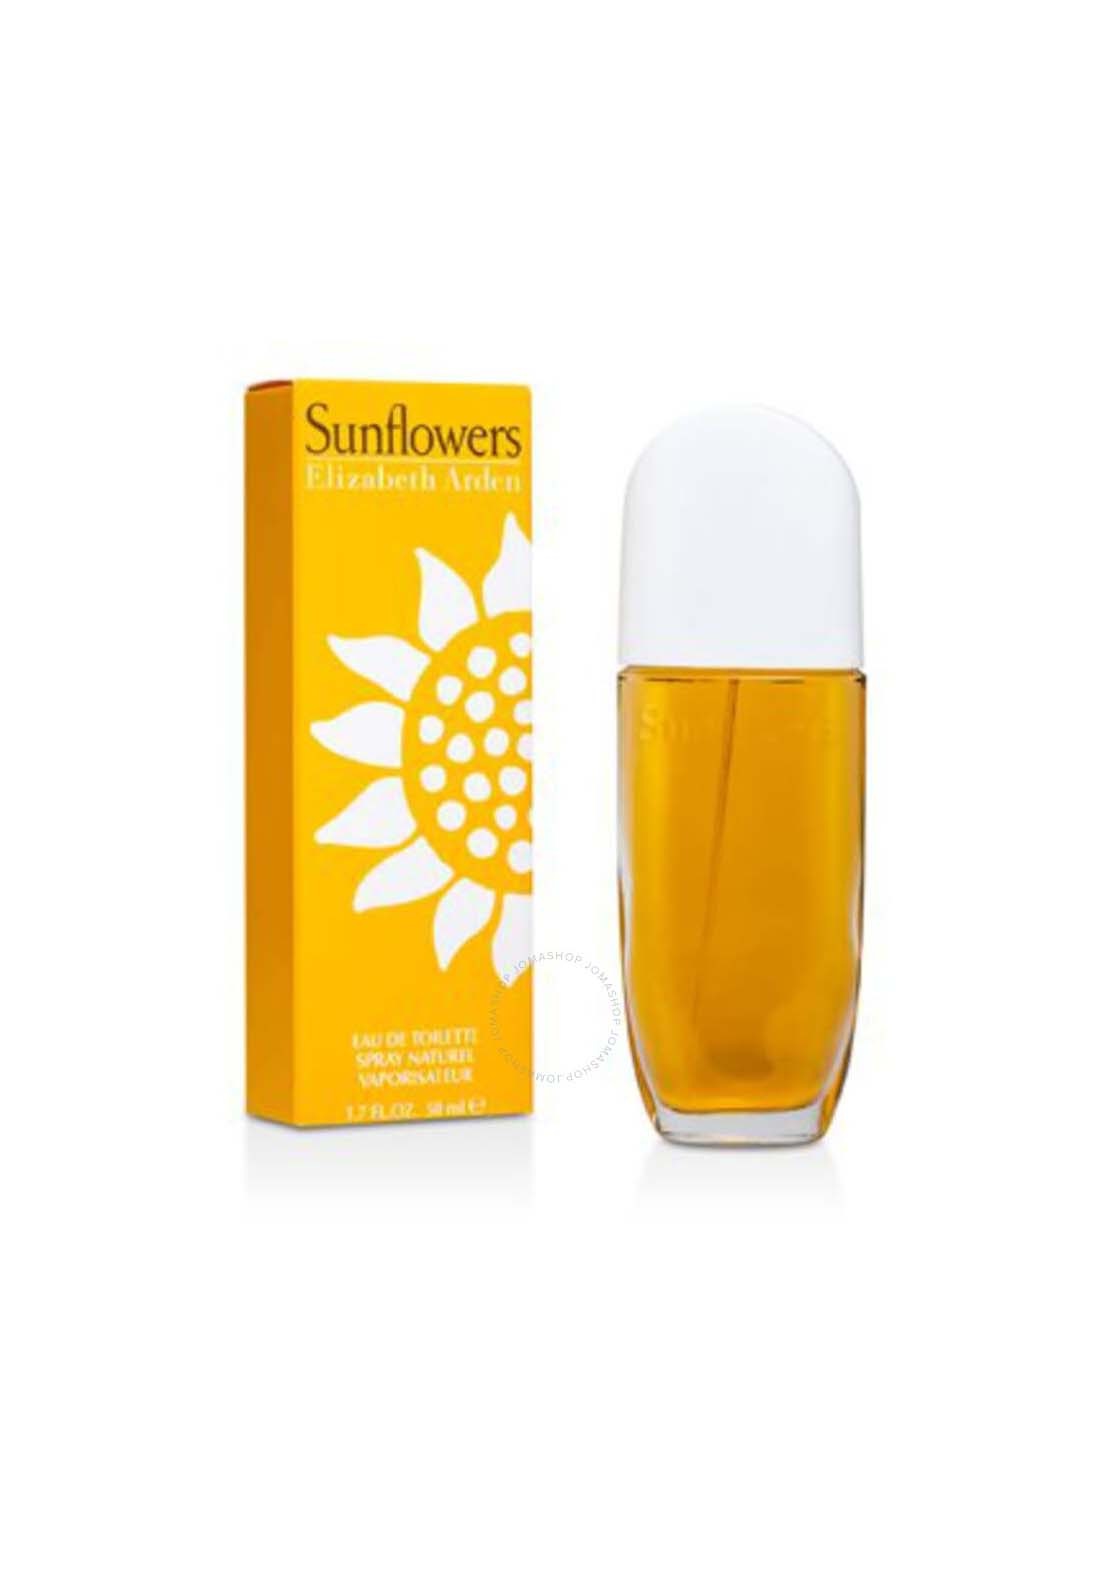 Elizabeth Arden Sunflowers Eau de Toilette Spray 1 Shaws Department Stores